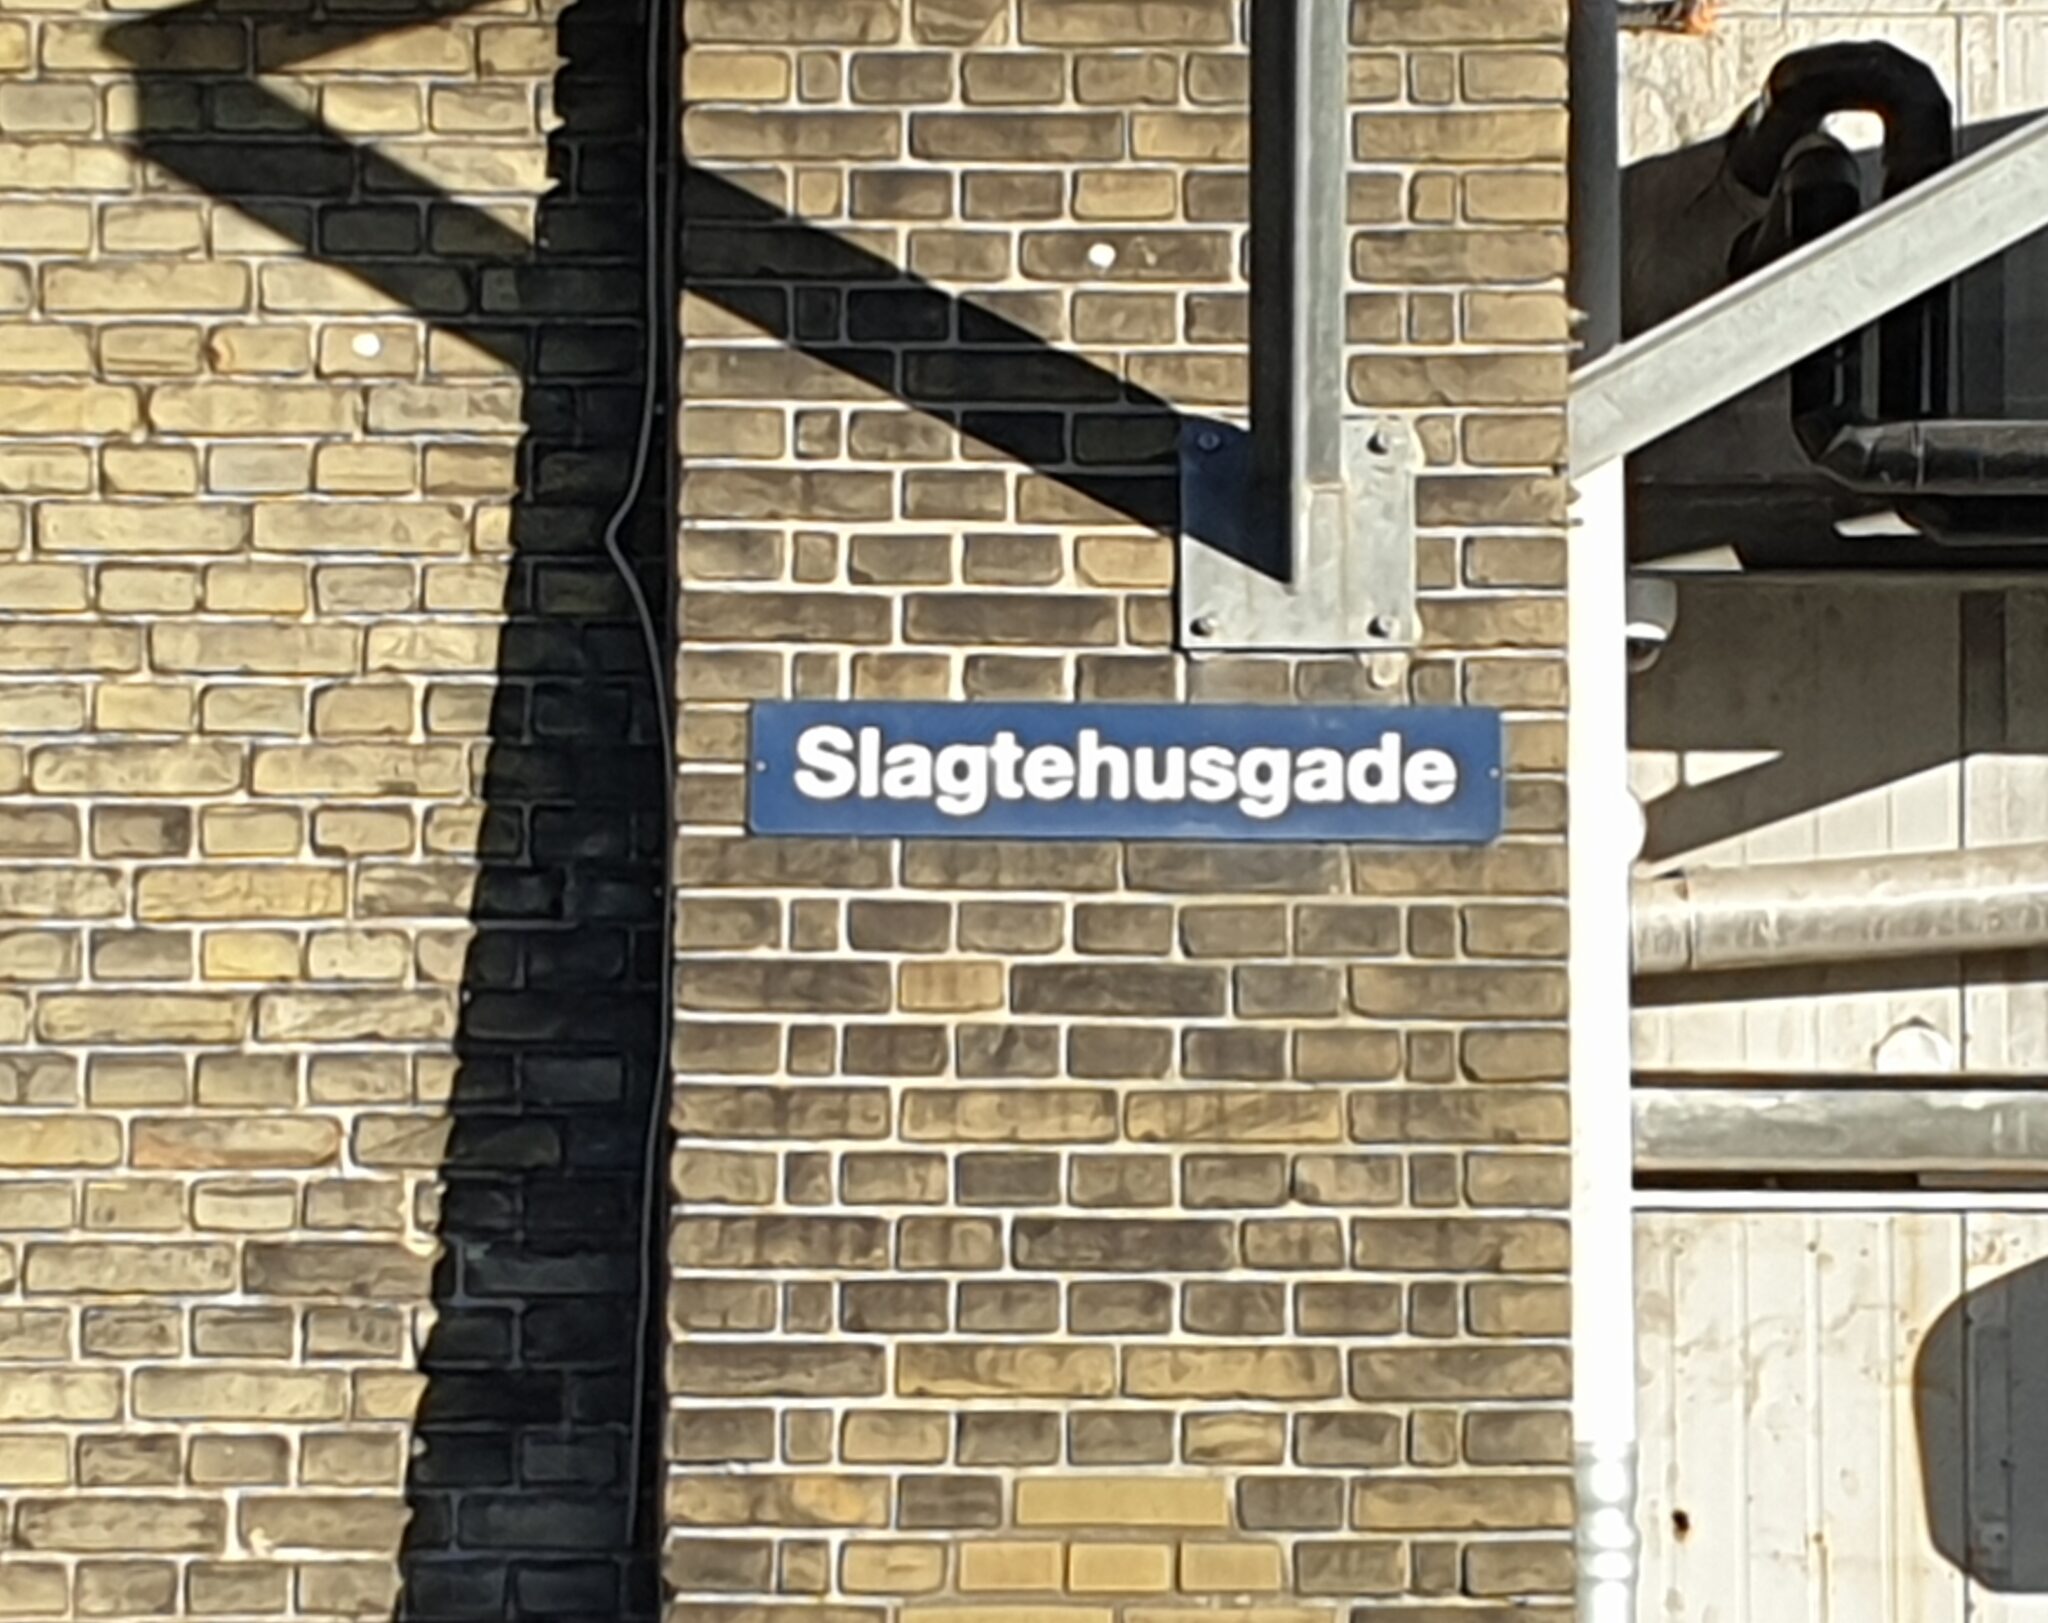 Kødbyen Slagtehusgade